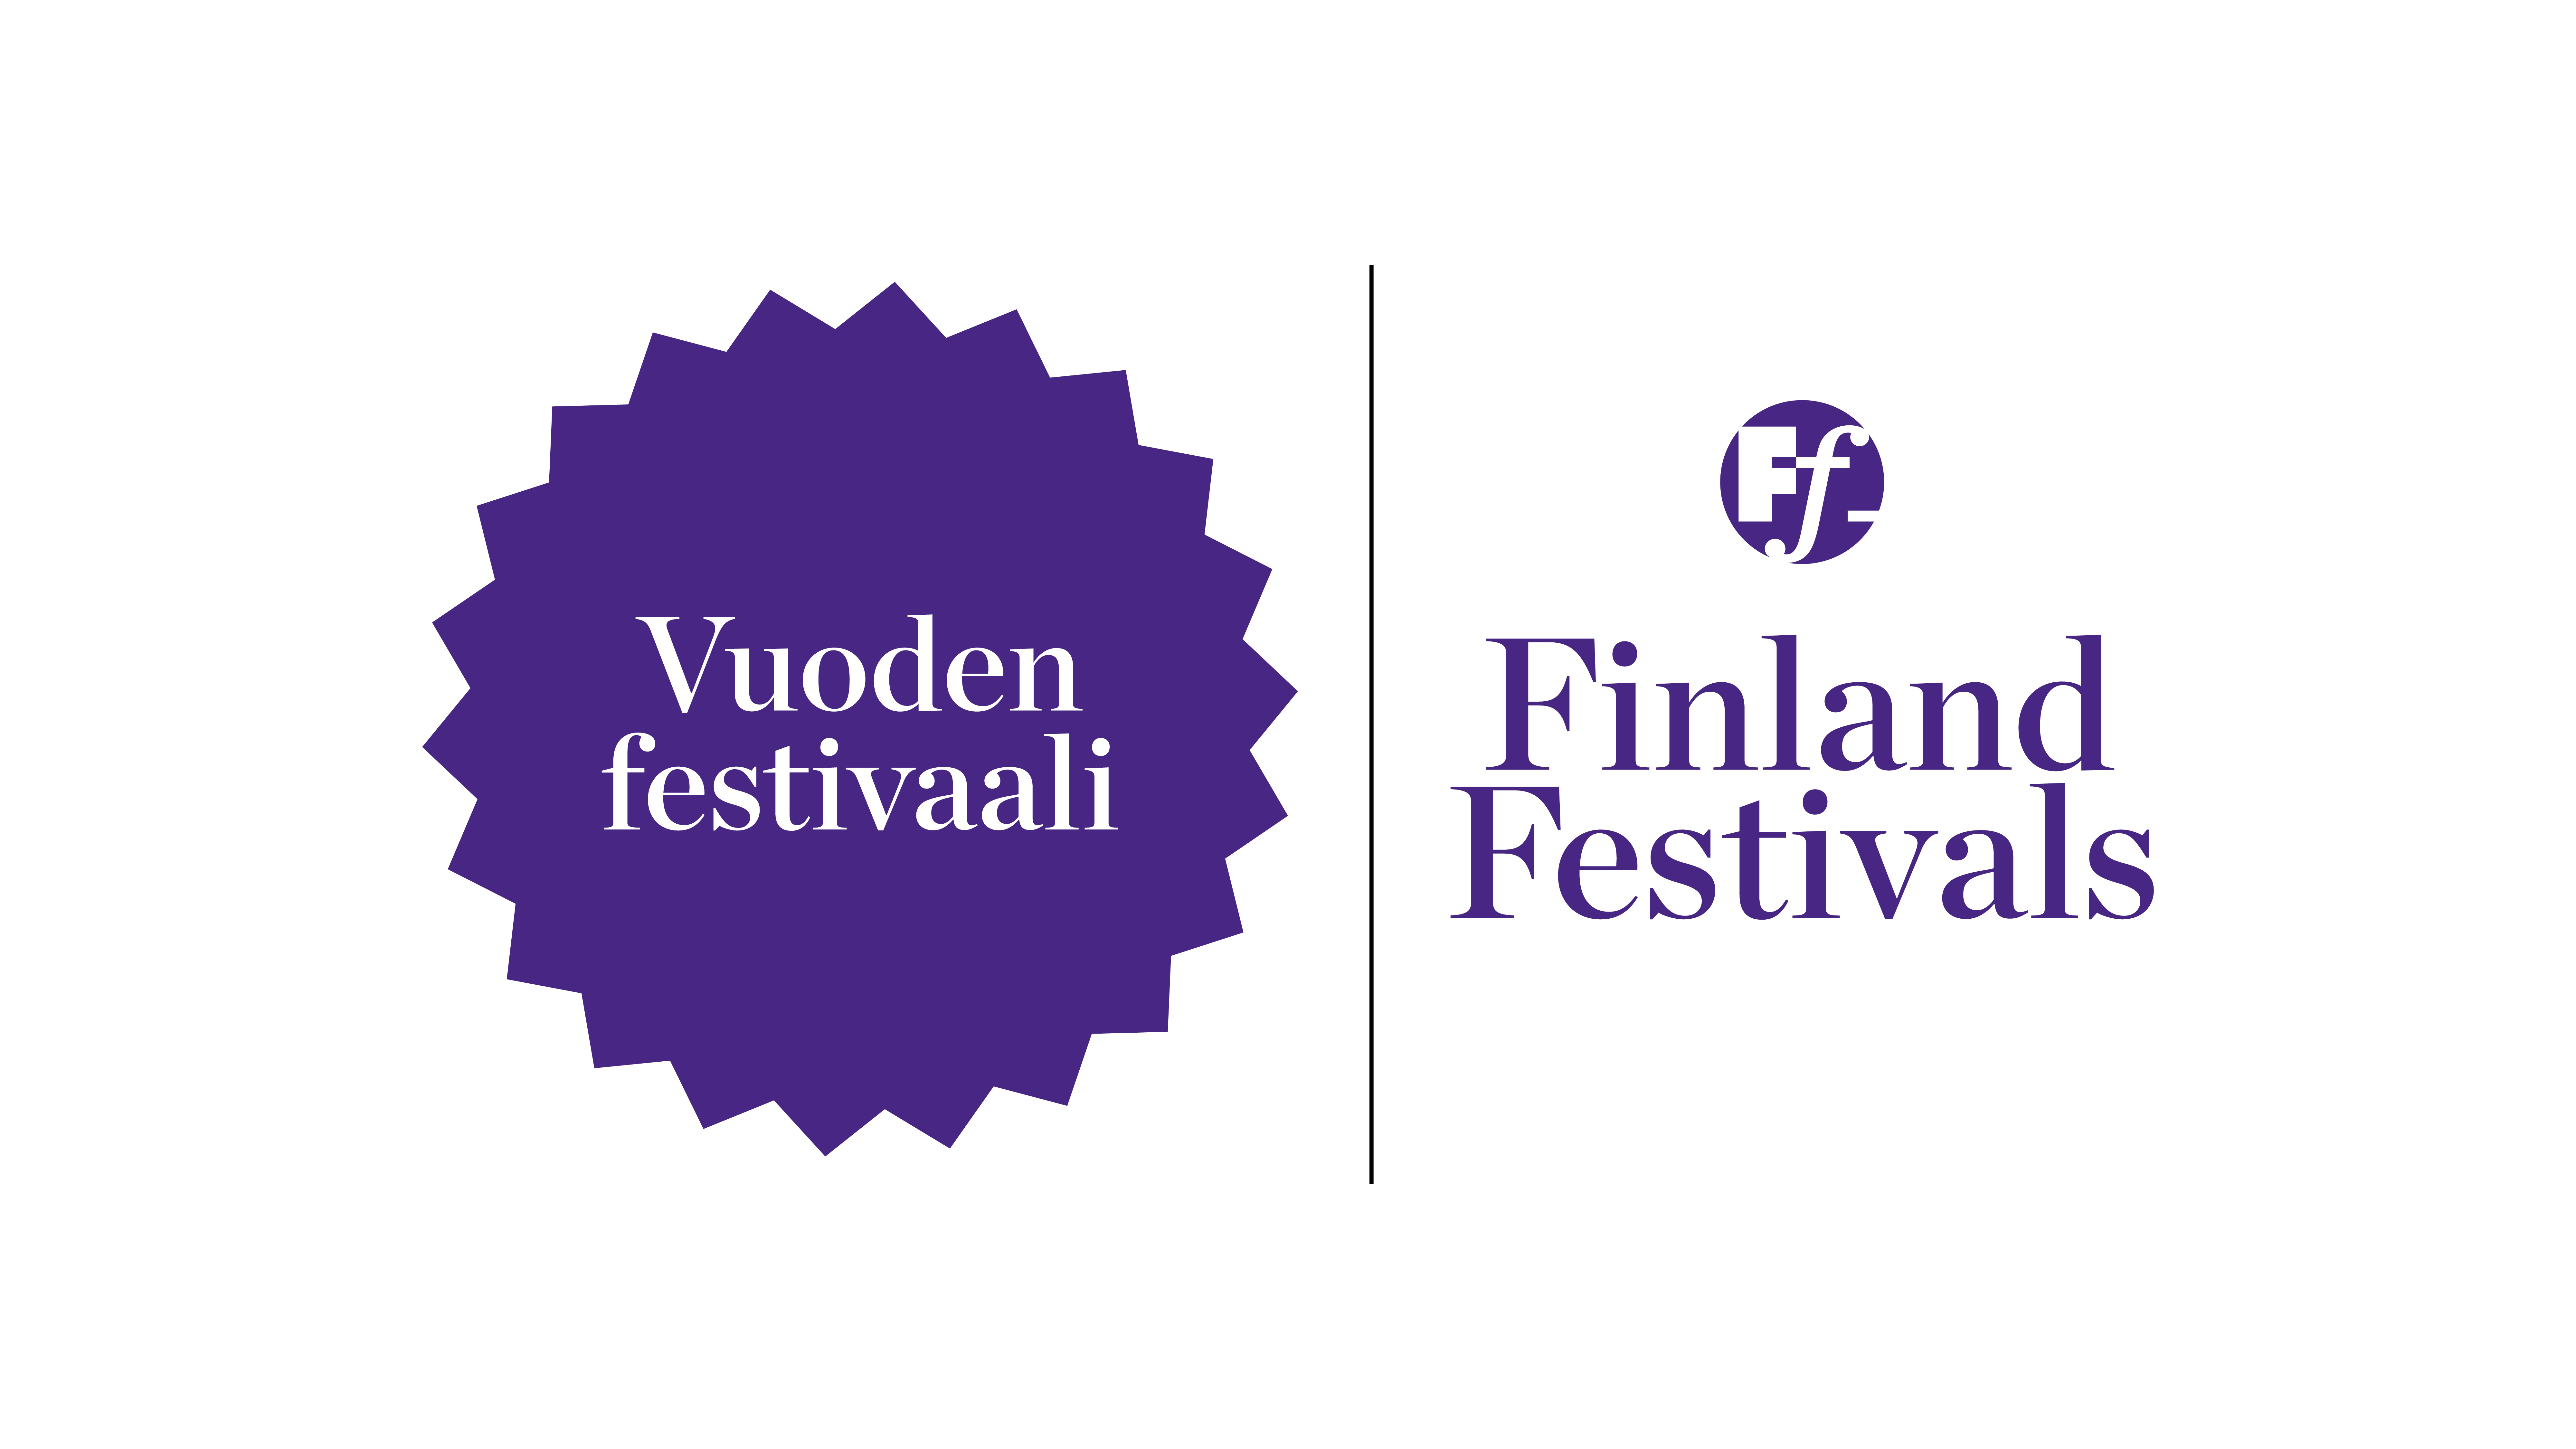 Mikkeli Music Festival is the Festival of the Year 2023